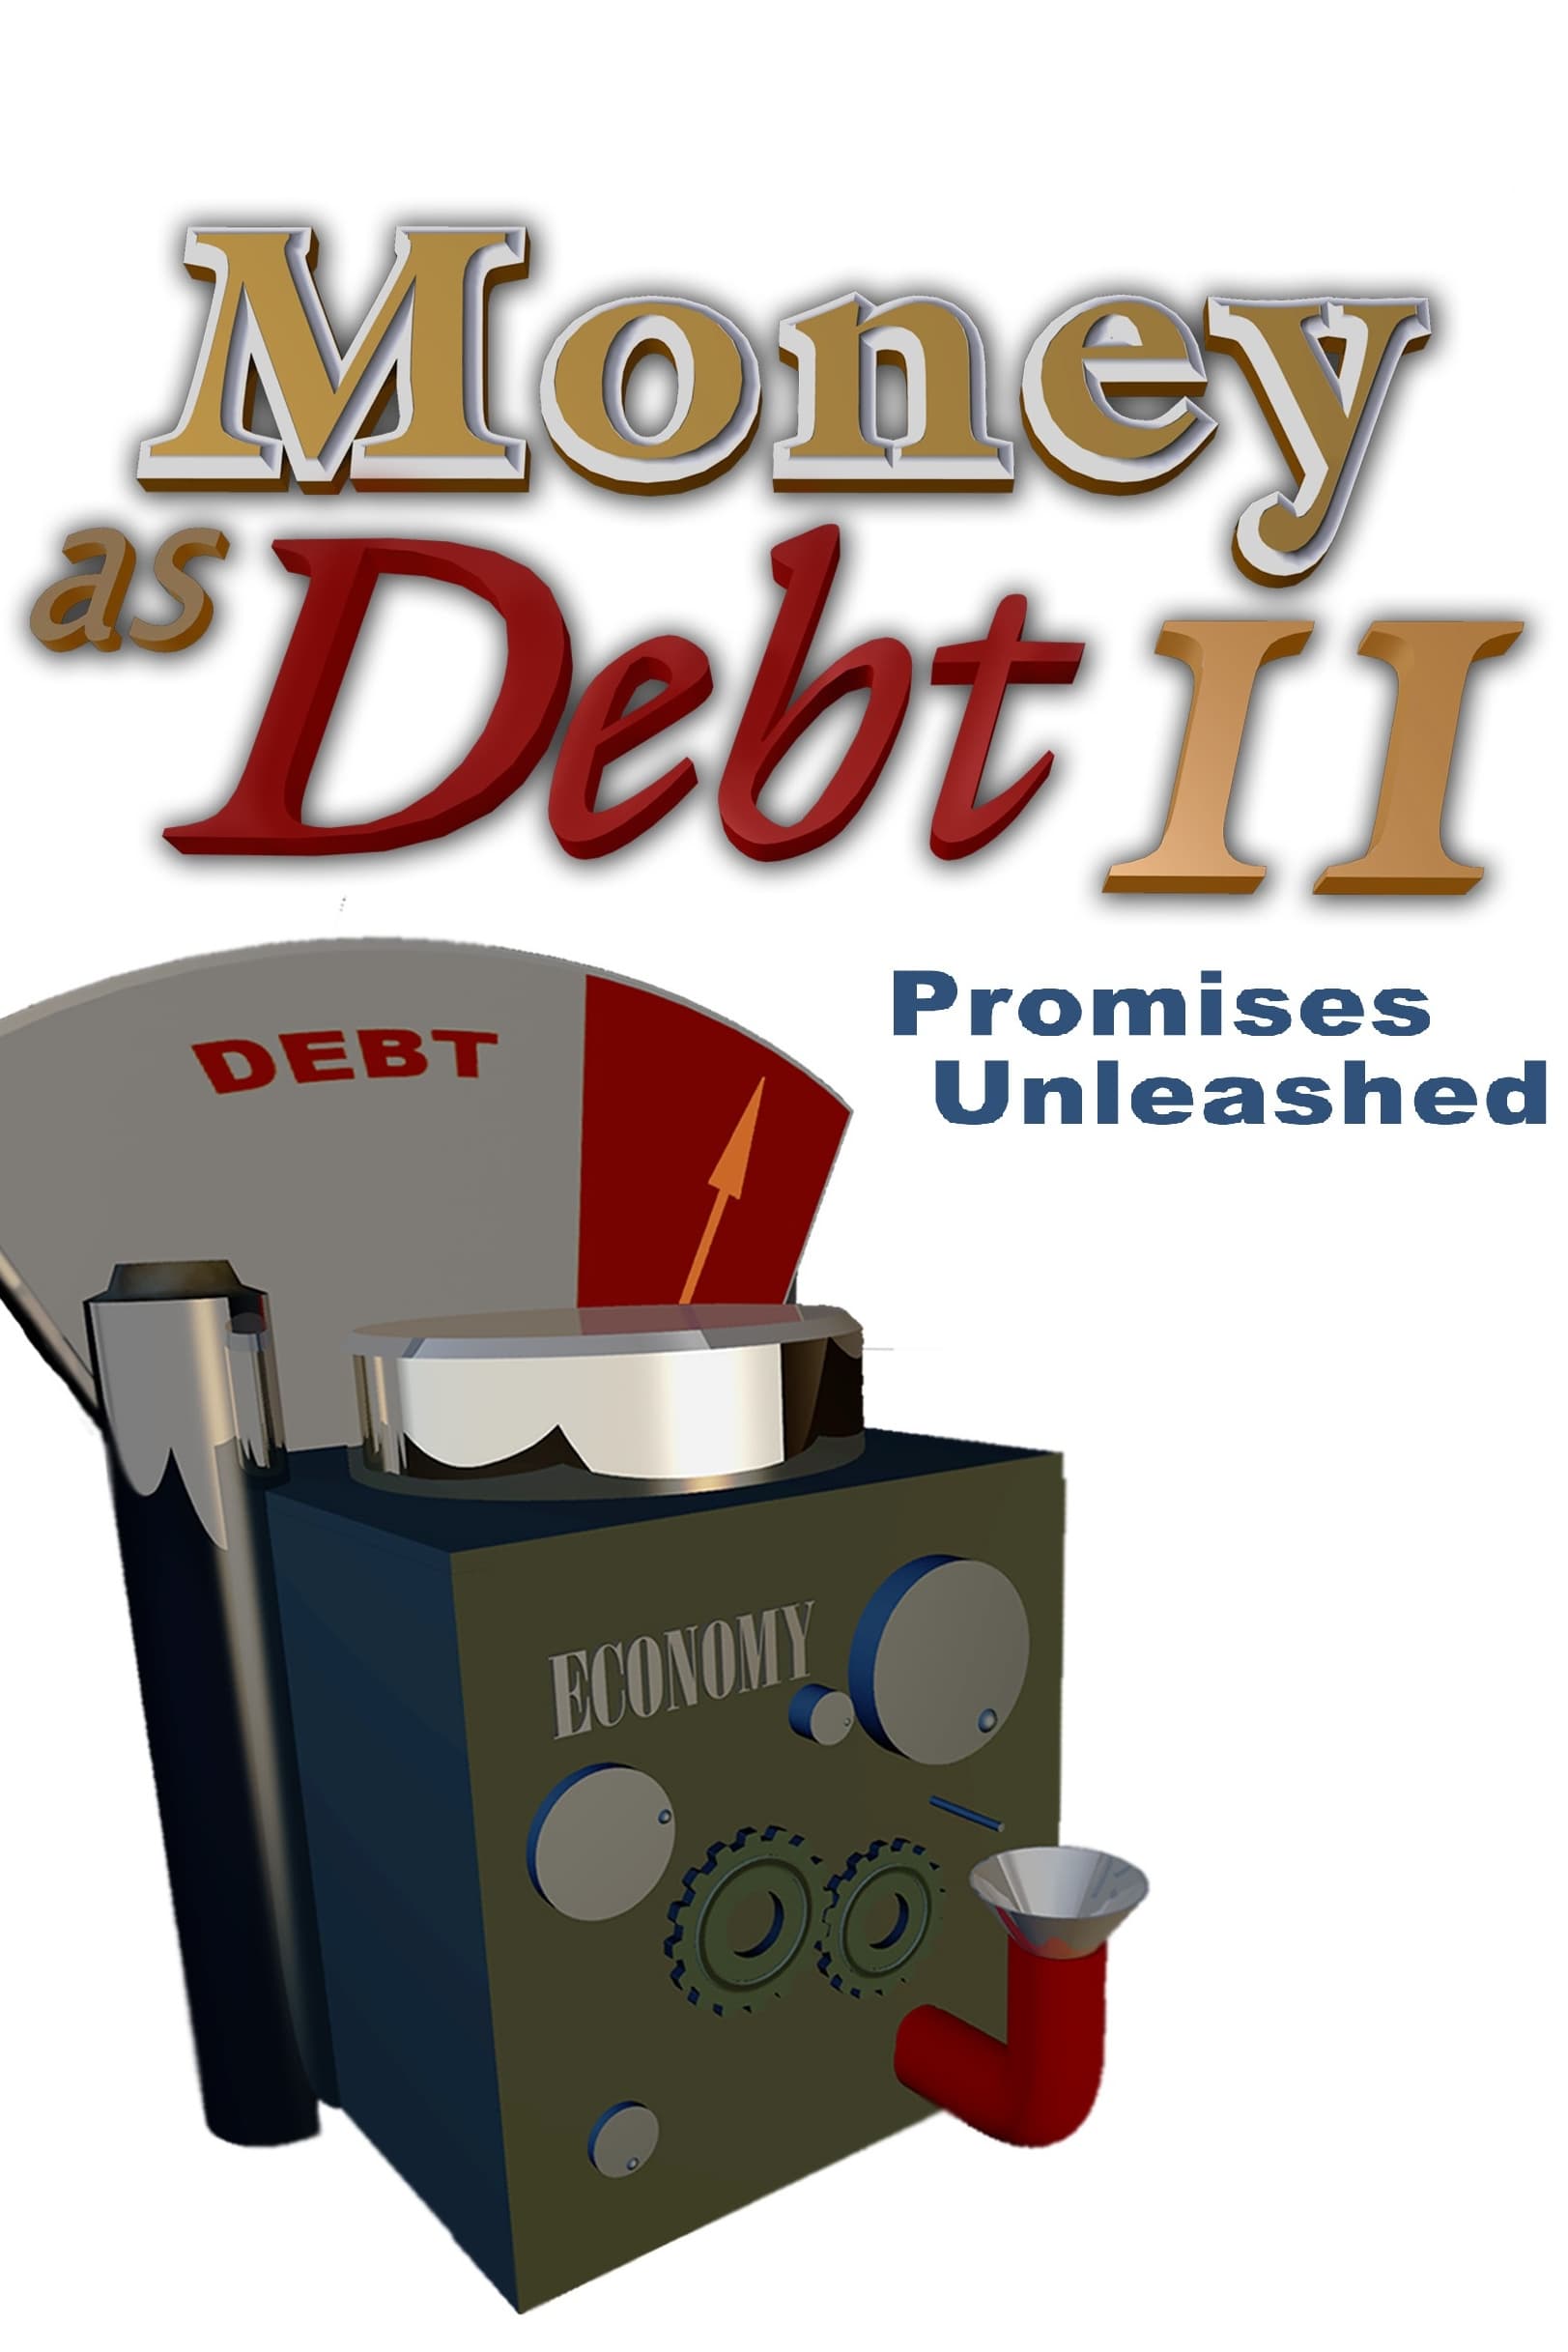 Money as Debt II